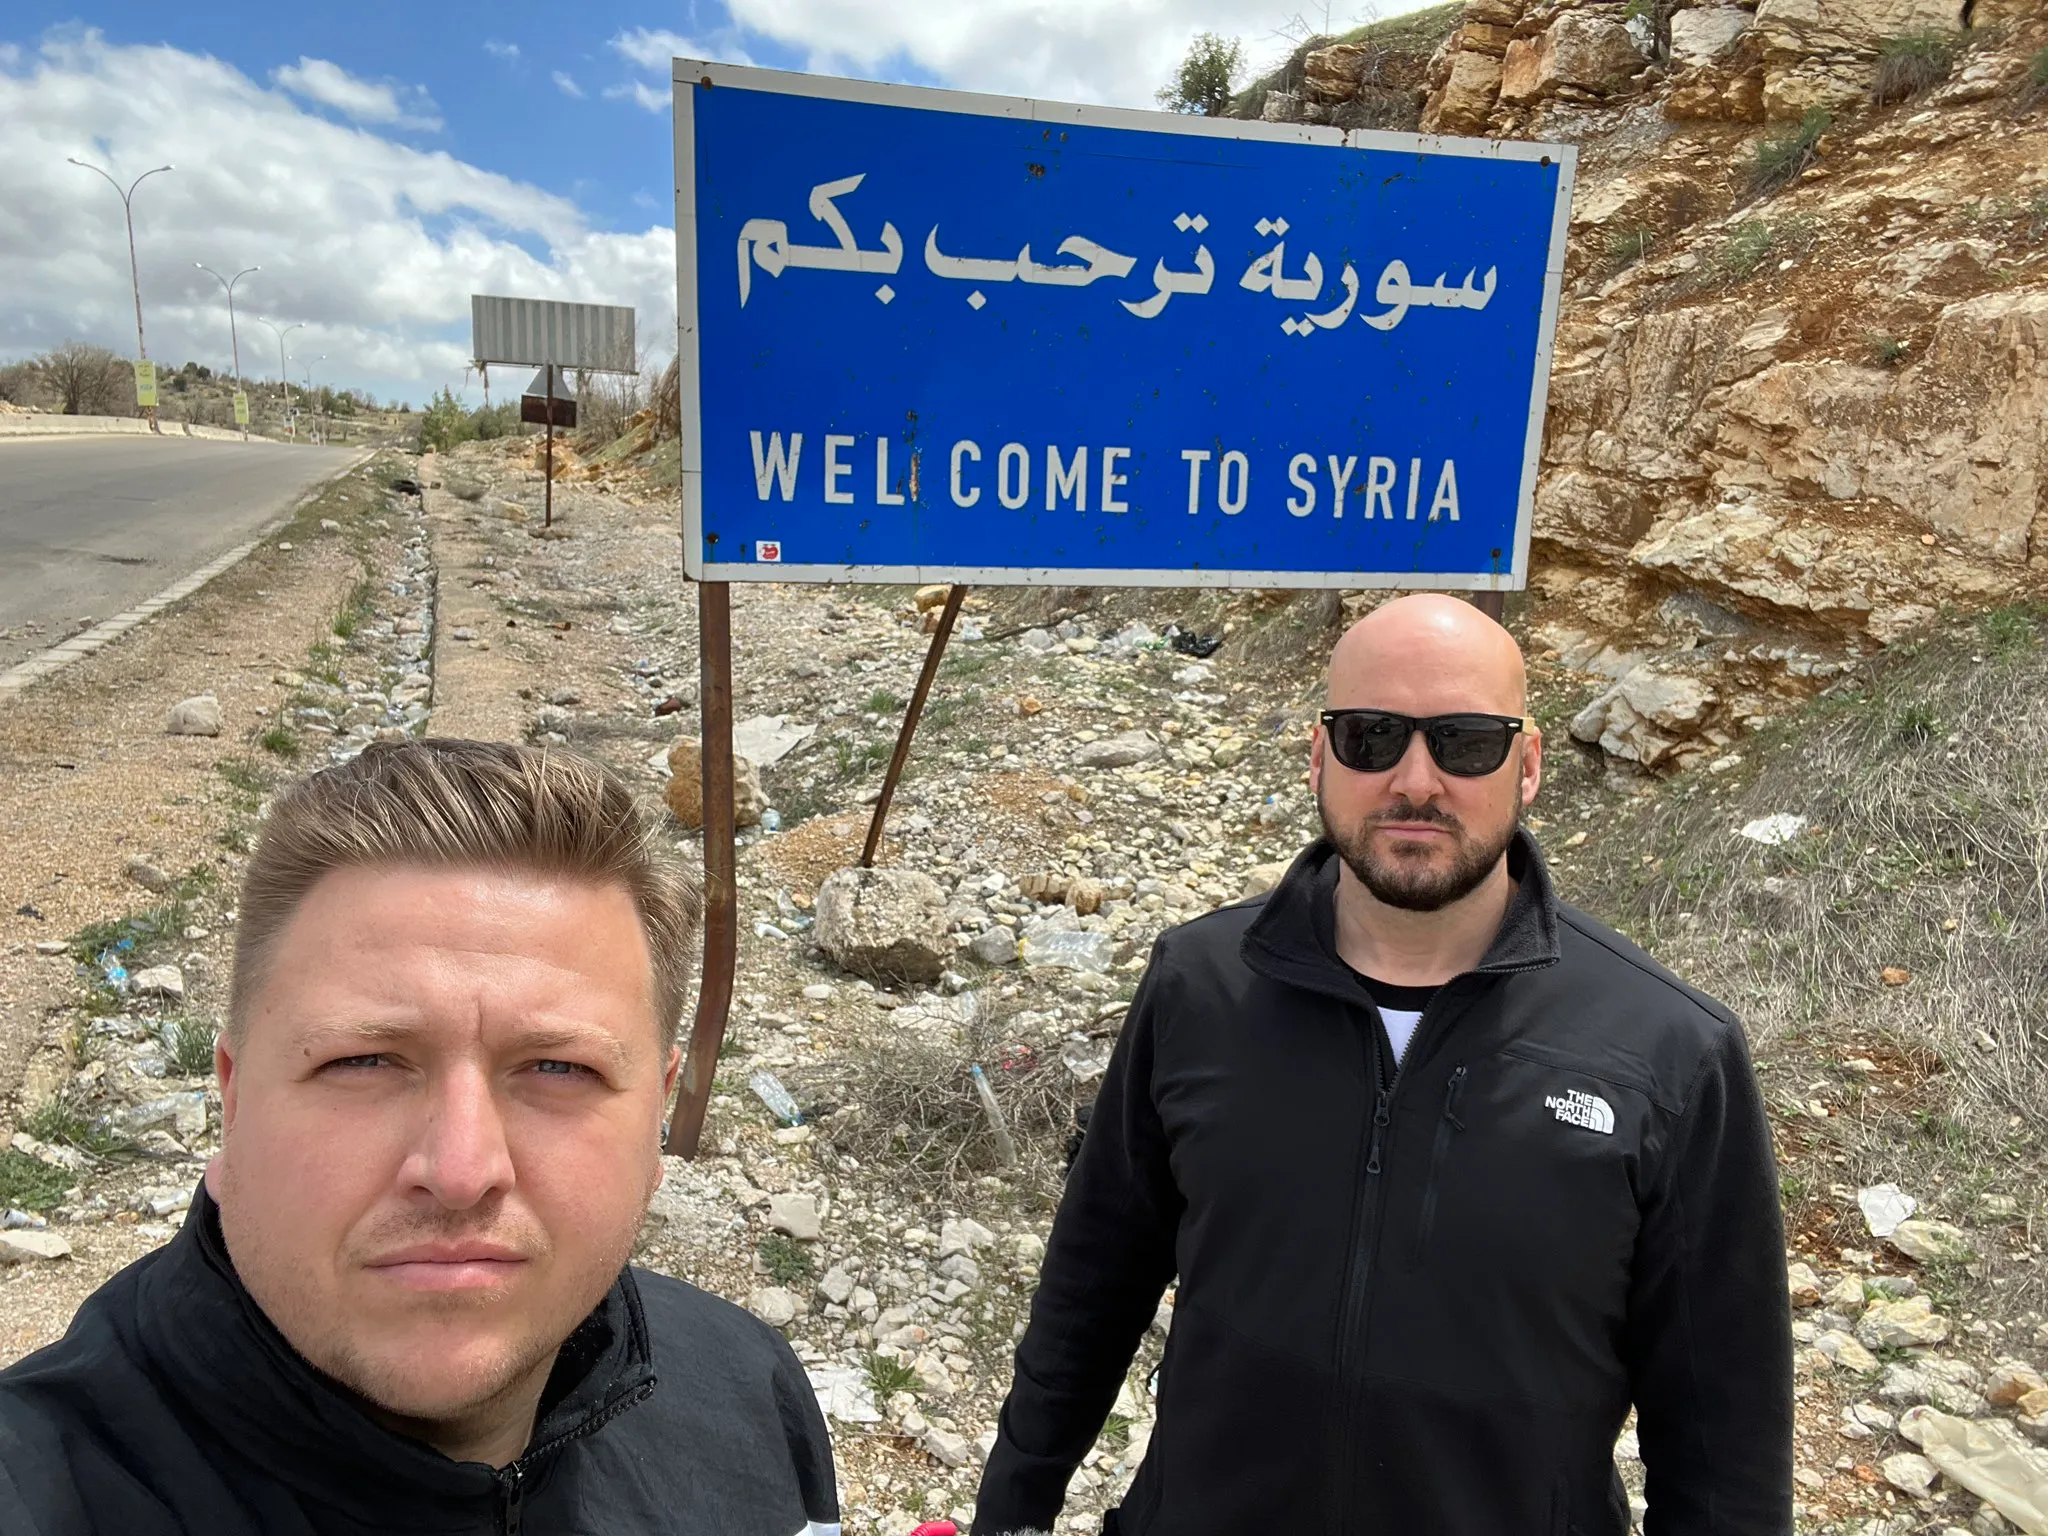 "الغارديان": صناع المحتوى الذين زاروا سوريا قدموا "صورة غير دقيقة" لملايين المشتركين